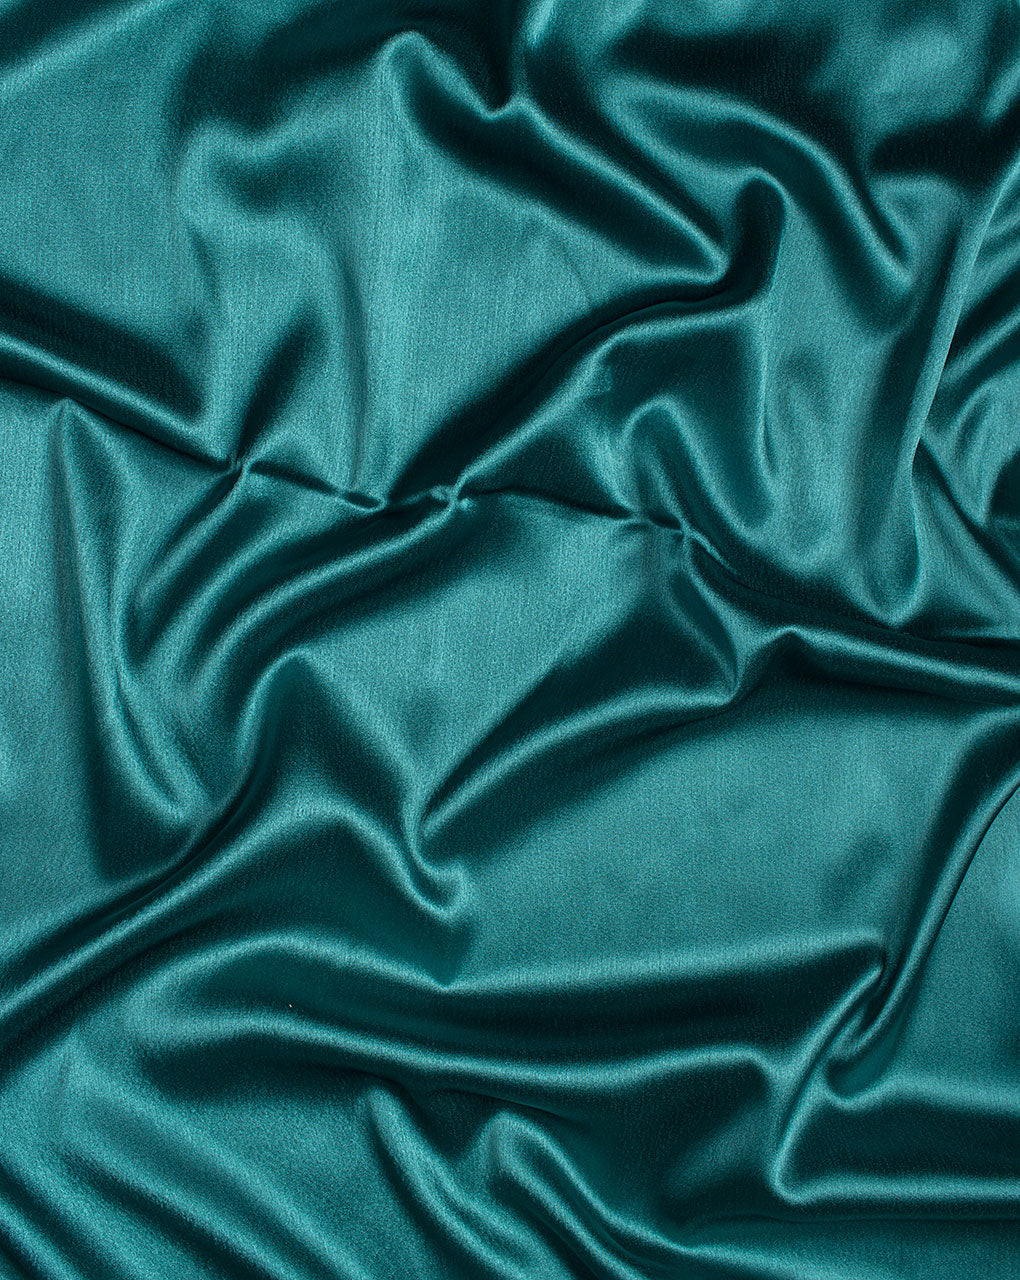 Teal Plain Satin Fabric